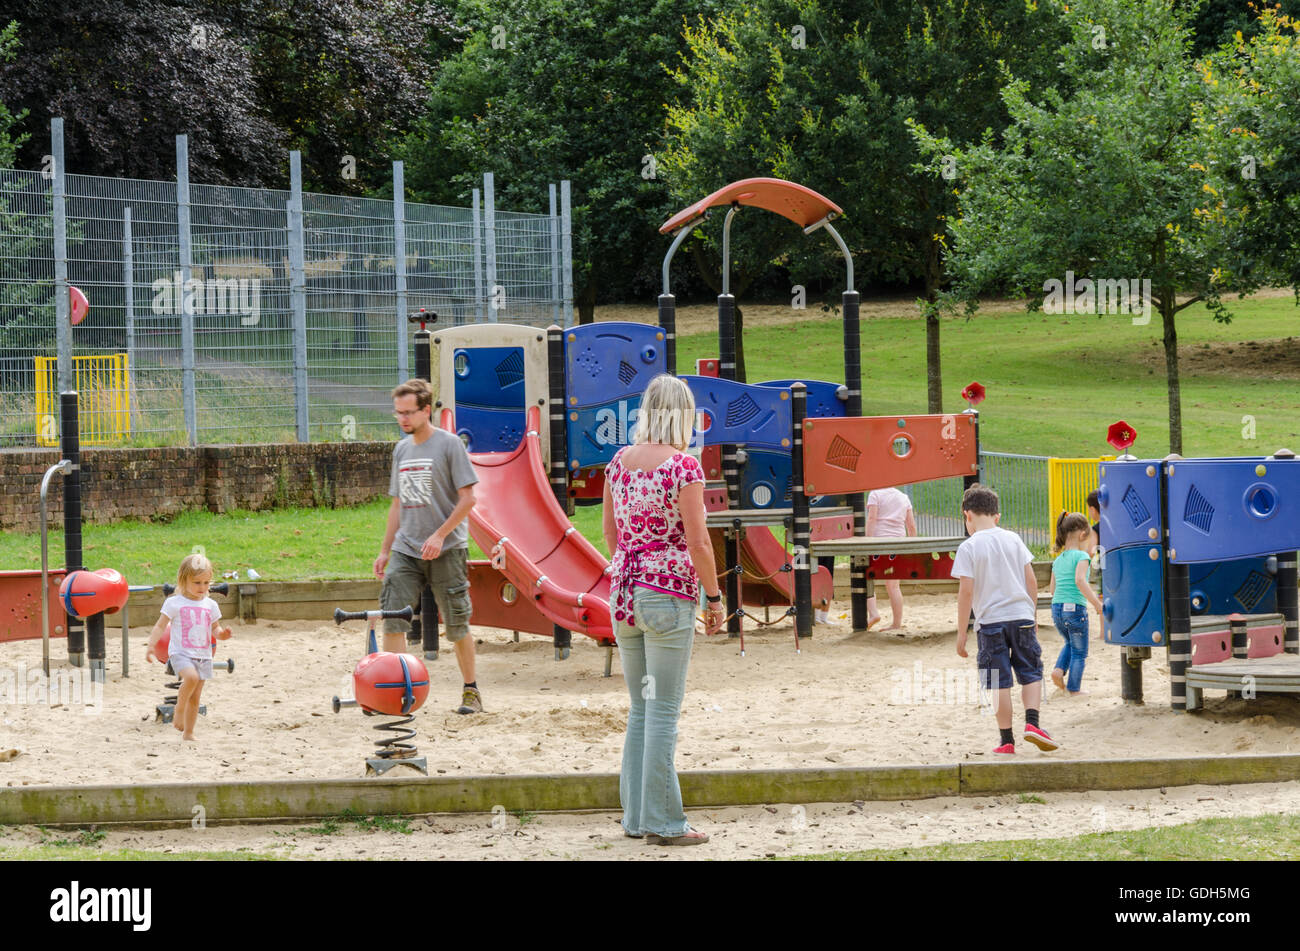 Une vue sur le bac à sable dans l'aire de jeux pour enfants dans la région de Prospect Park, lecture. Banque D'Images